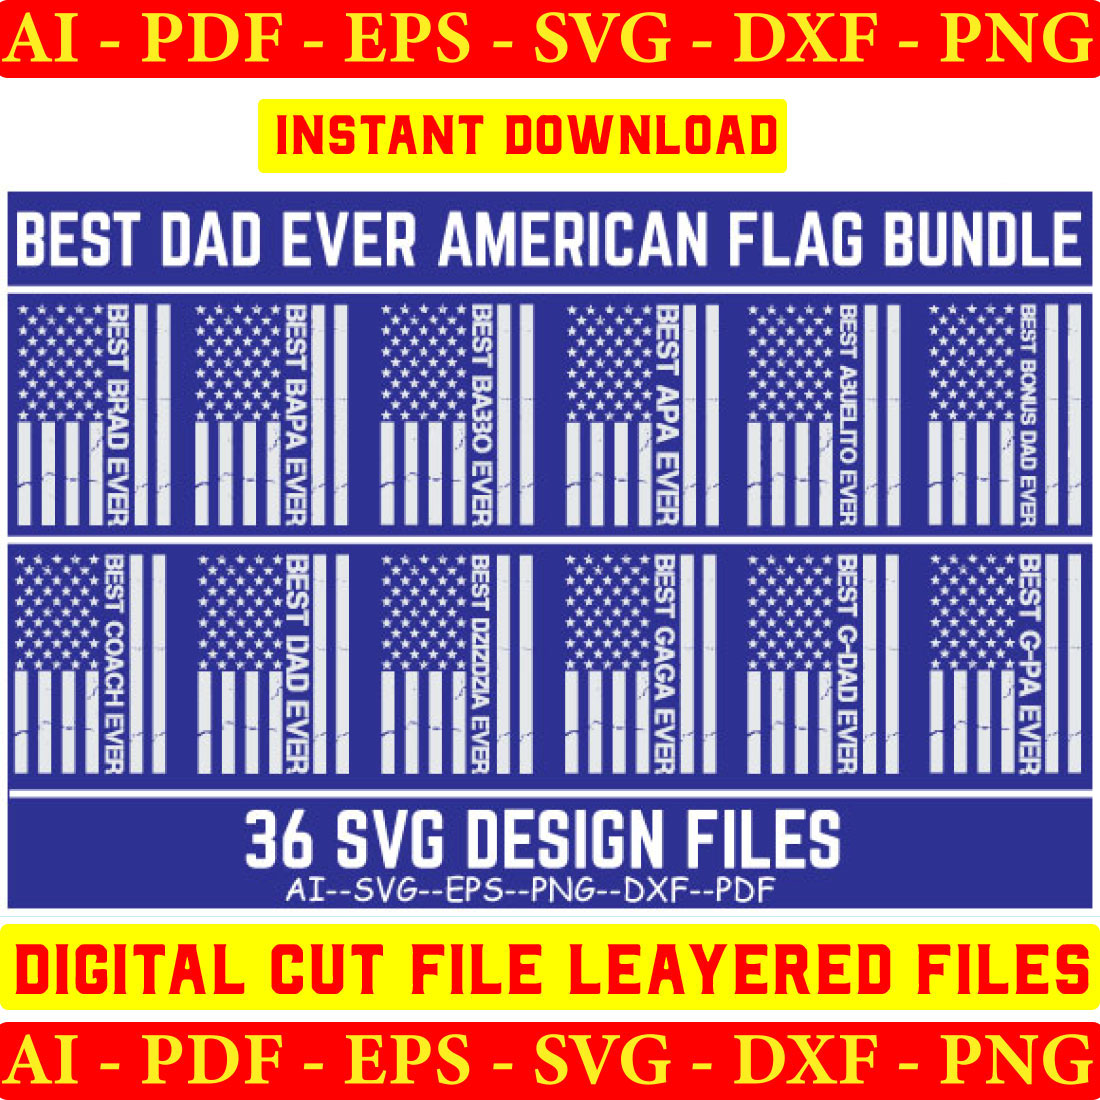 Best Dad Ever Distressed USA Flag Design SVG Bundle cover image.